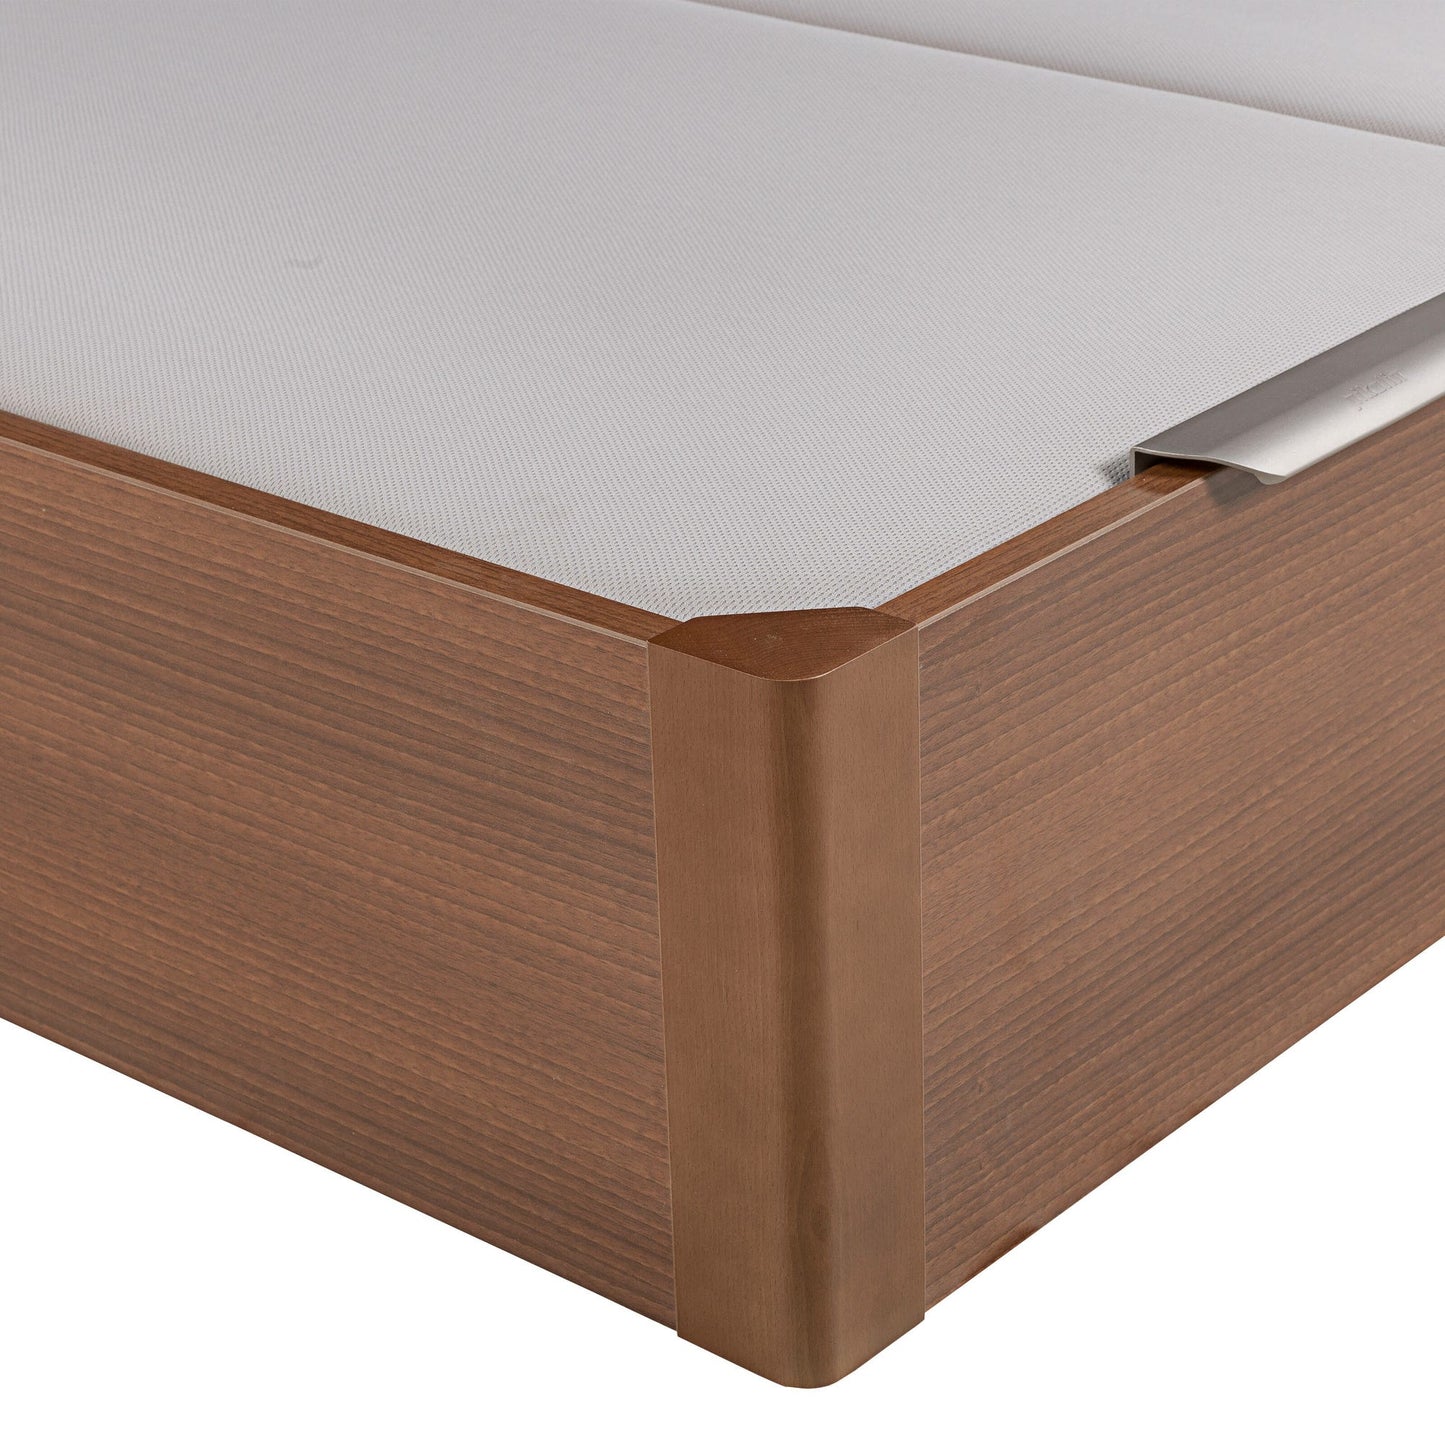 Canapé abatible de madera de tapa doble de color cerezo - DESIGN - 160x182